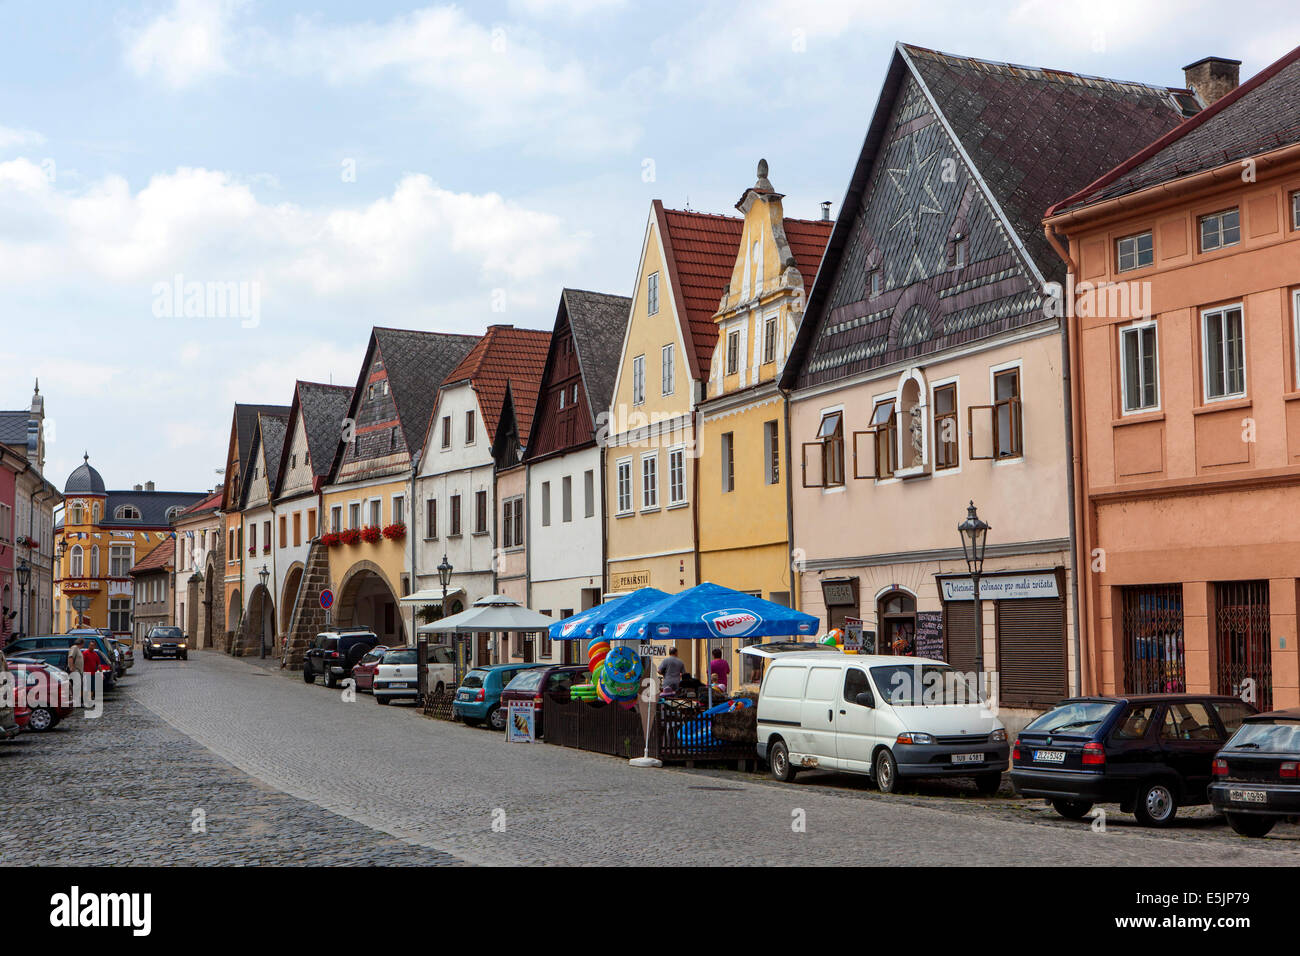 Westlichen Teil des Marktes - Giebel Häuser auf Mirove Square, Ustek Stadt - die kleinste städtische Erhaltung in der Tschechischen Republik-N Stockfoto